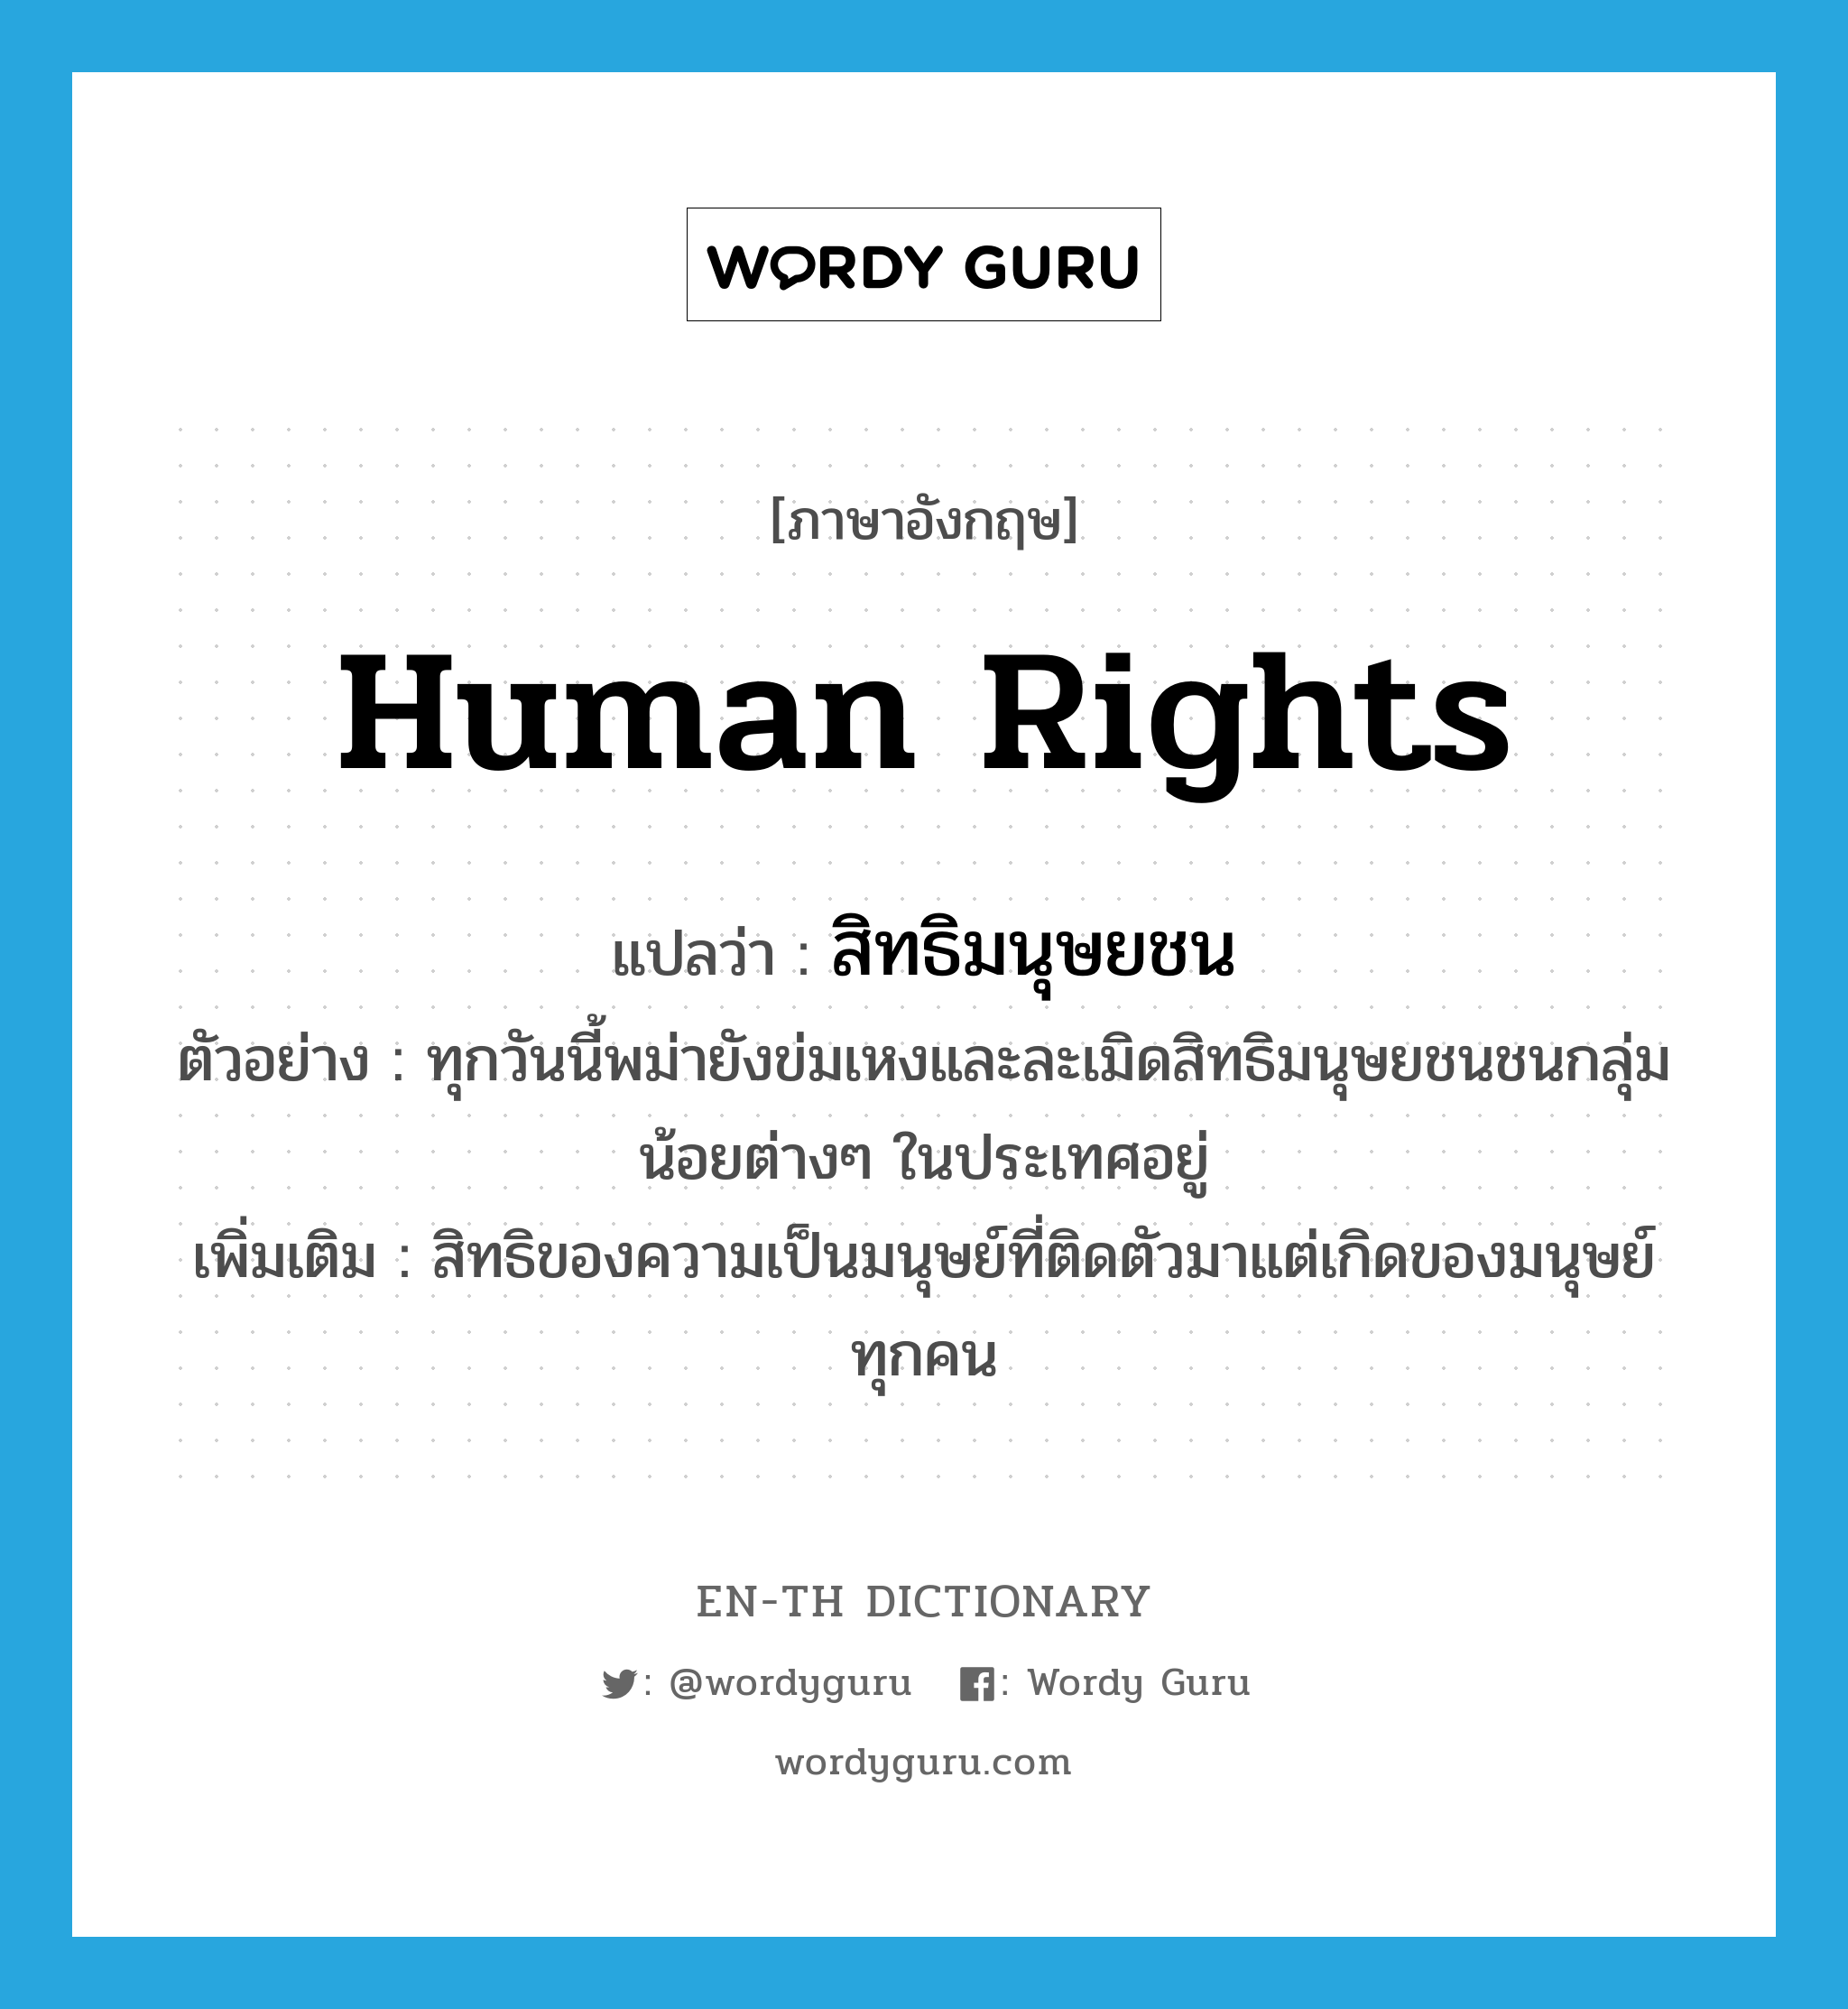 human rights แปลว่า?, คำศัพท์ภาษาอังกฤษ human rights แปลว่า สิทธิมนุษยชน ประเภท N ตัวอย่าง ทุกวันนี้พม่ายังข่มเหงและละเมิดสิทธิมนุษยชนชนกลุ่มน้อยต่างๆ ในประเทศอยู่ เพิ่มเติม สิทธิของความเป็นมนุษย์ที่ติดตัวมาแต่เกิดของมนุษย์ทุกคน หมวด N